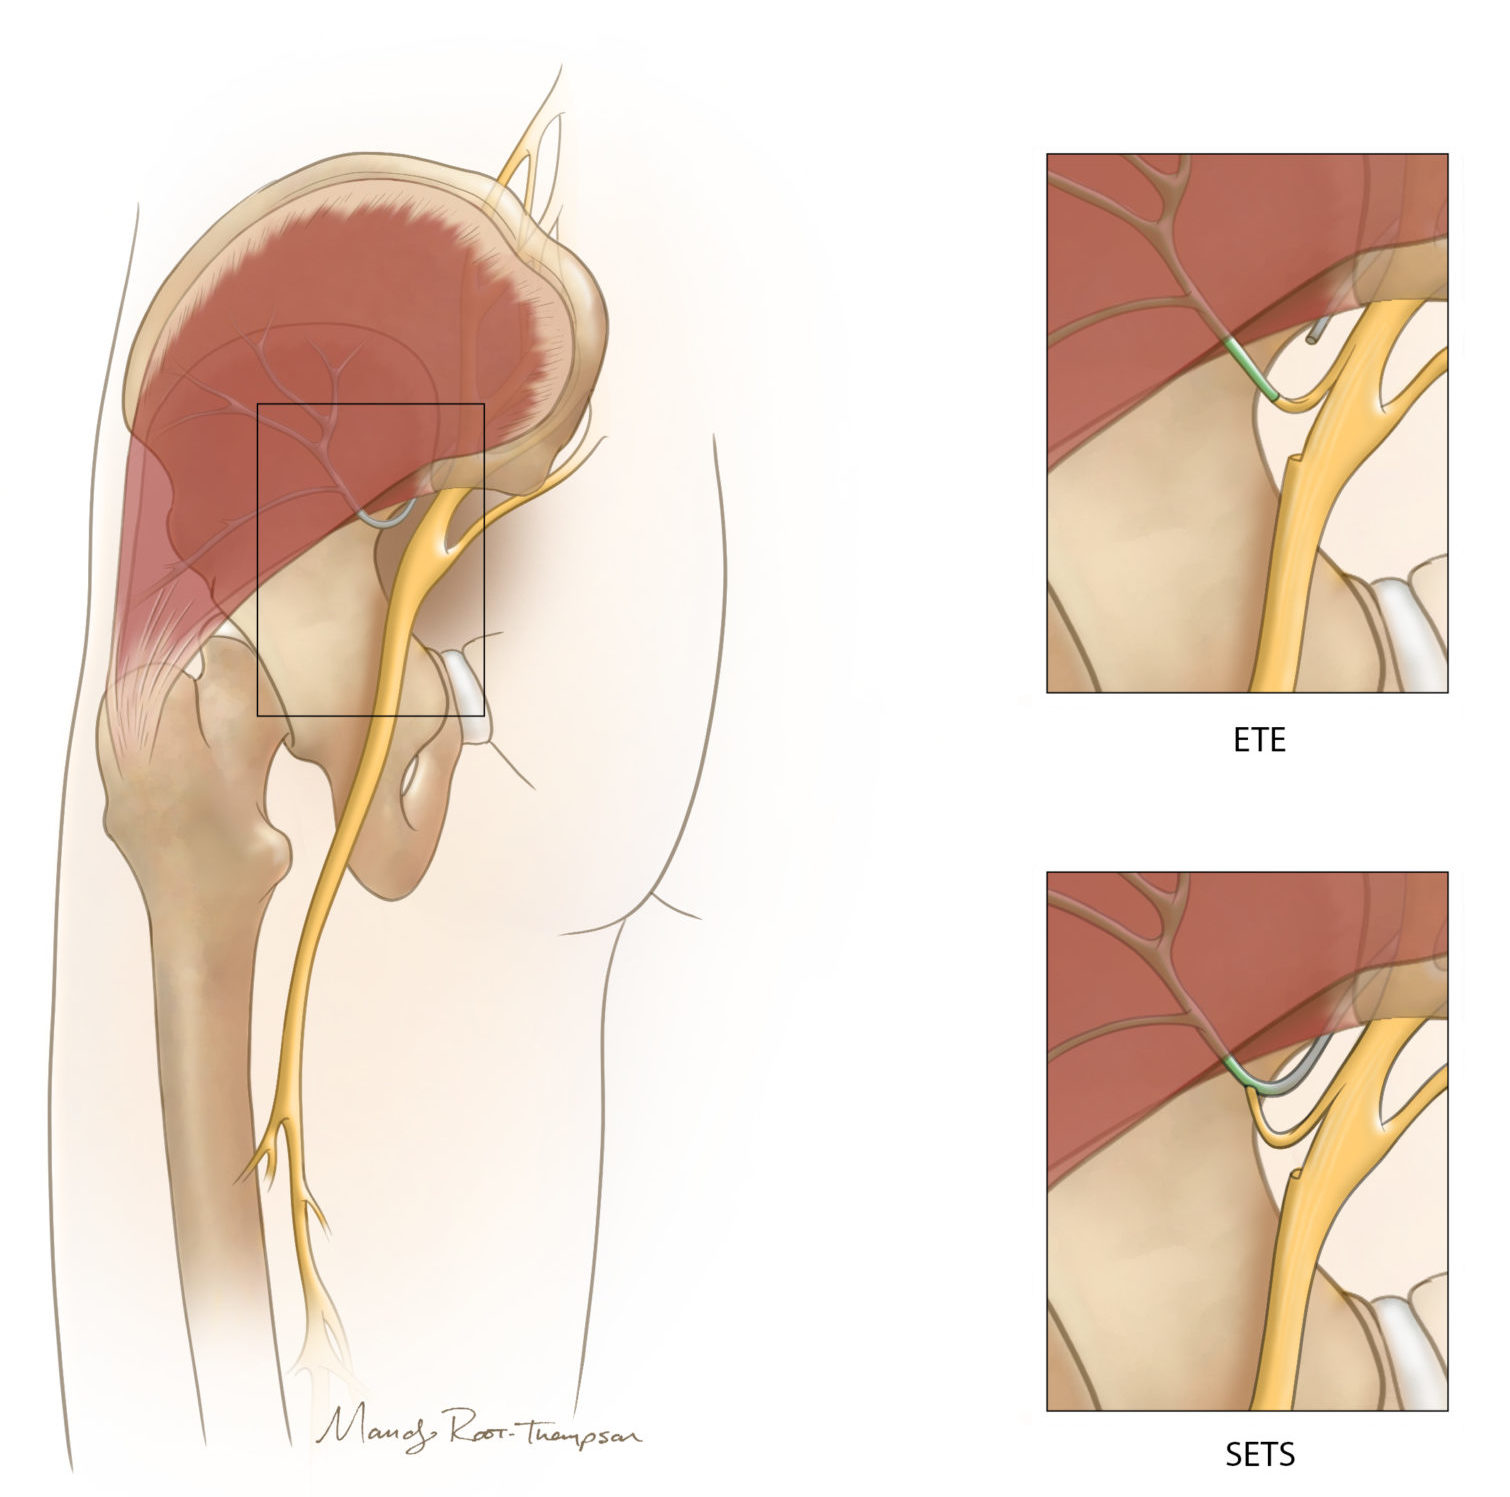 Medical illustration of nerve transfer